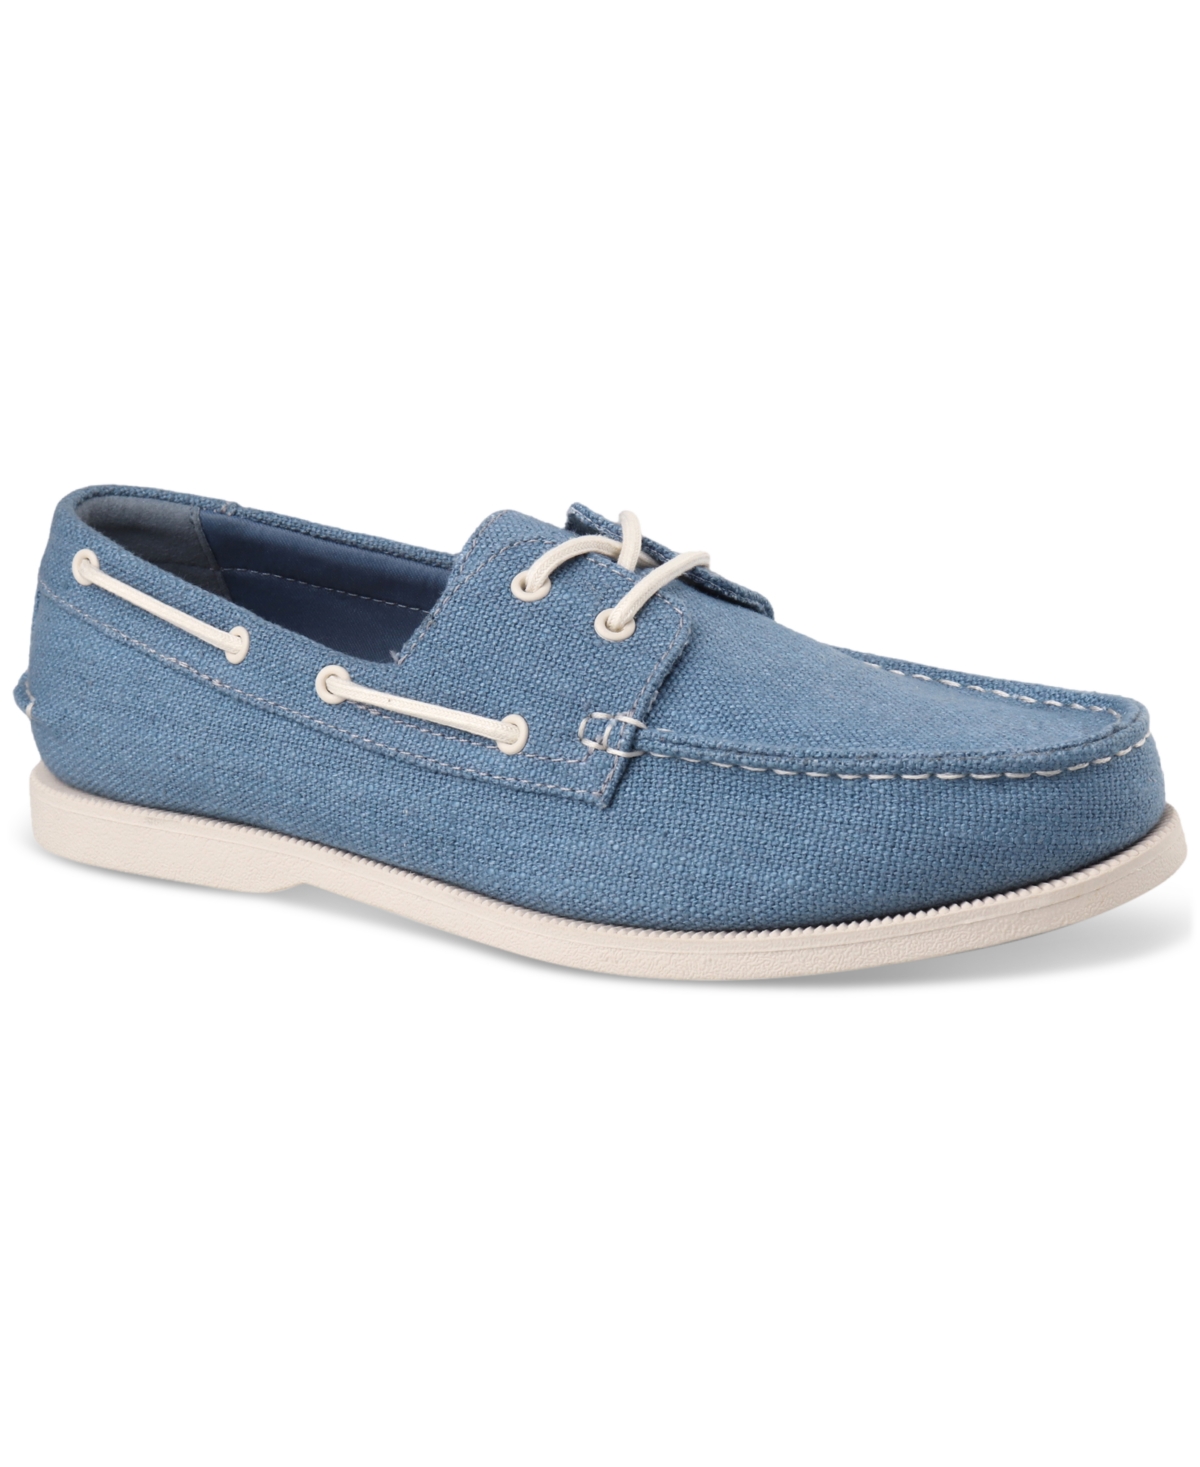 Men's Elliot Denim Boat Shoes, Created for Macy's - Light Blue